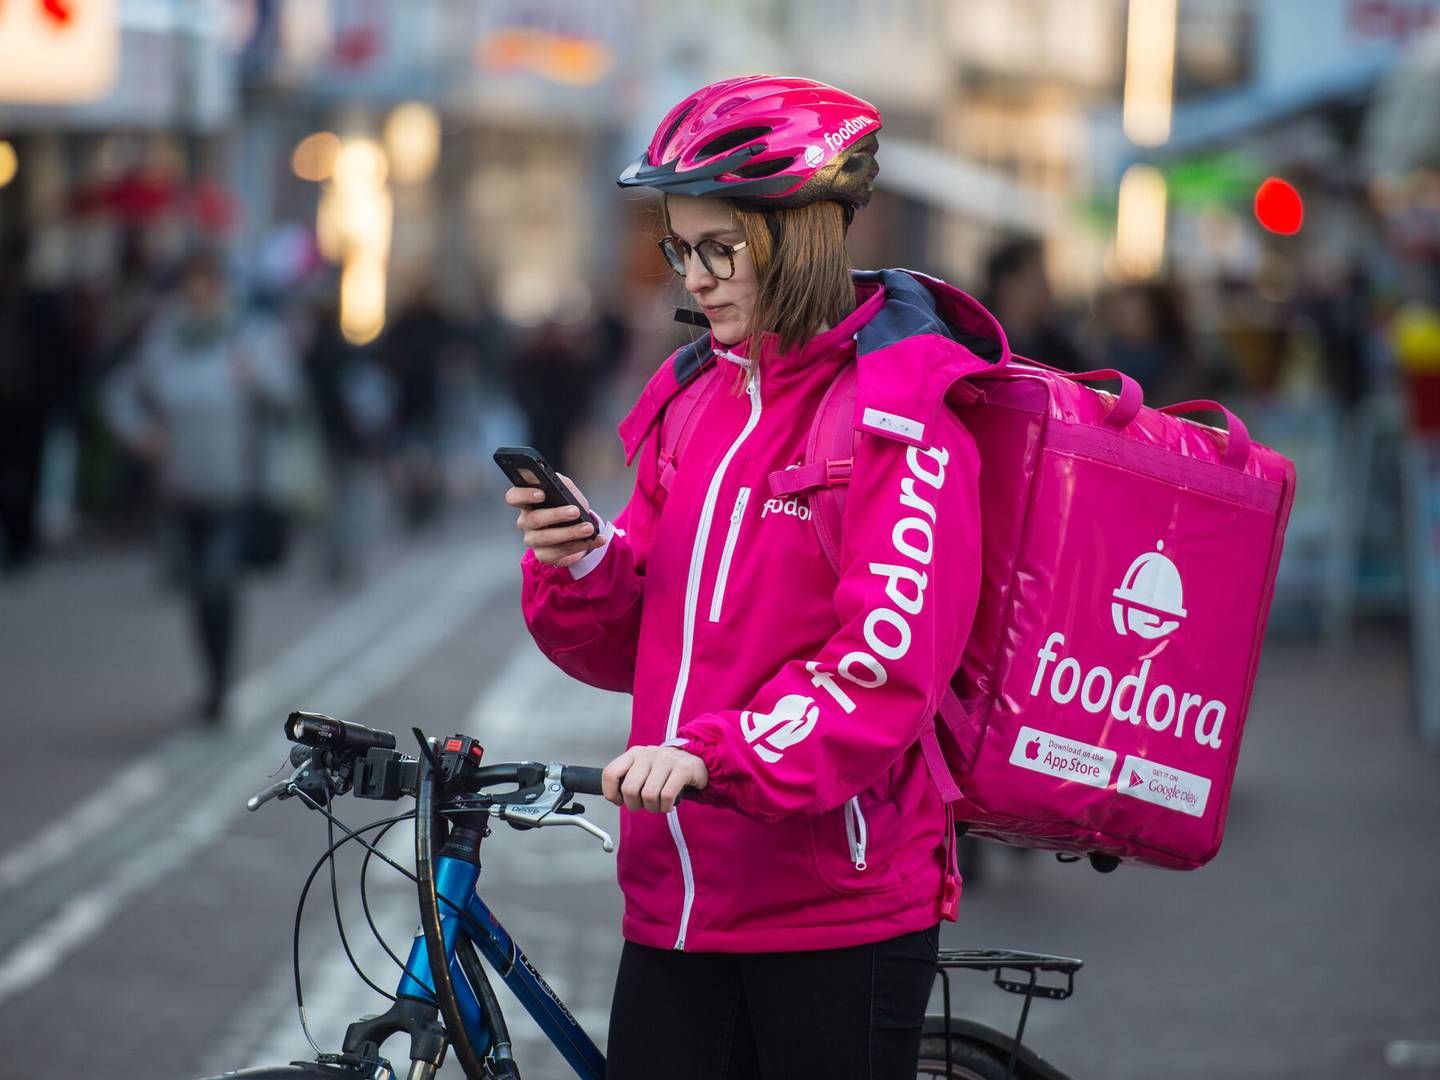 De lyserøde cykelbude får selskab af droner i Sverige. | Foto: Andreas Arnold/AP/Ritzau Scanpix